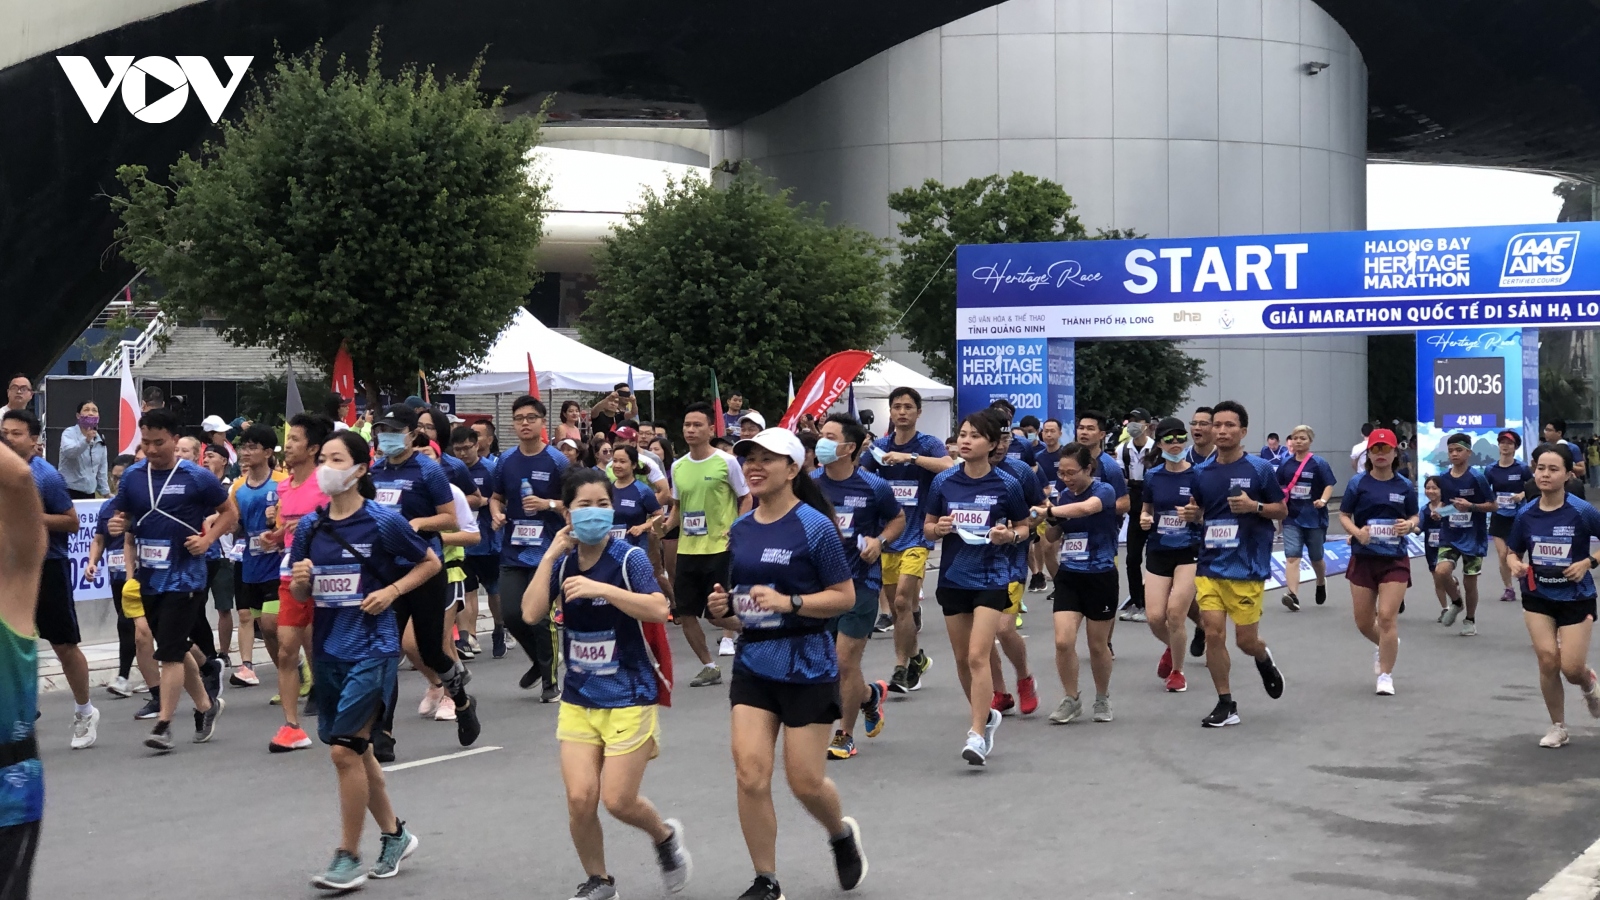 Giải marathon Quốc tế Di sản Hạ Long 2020 thành công tốt đẹp